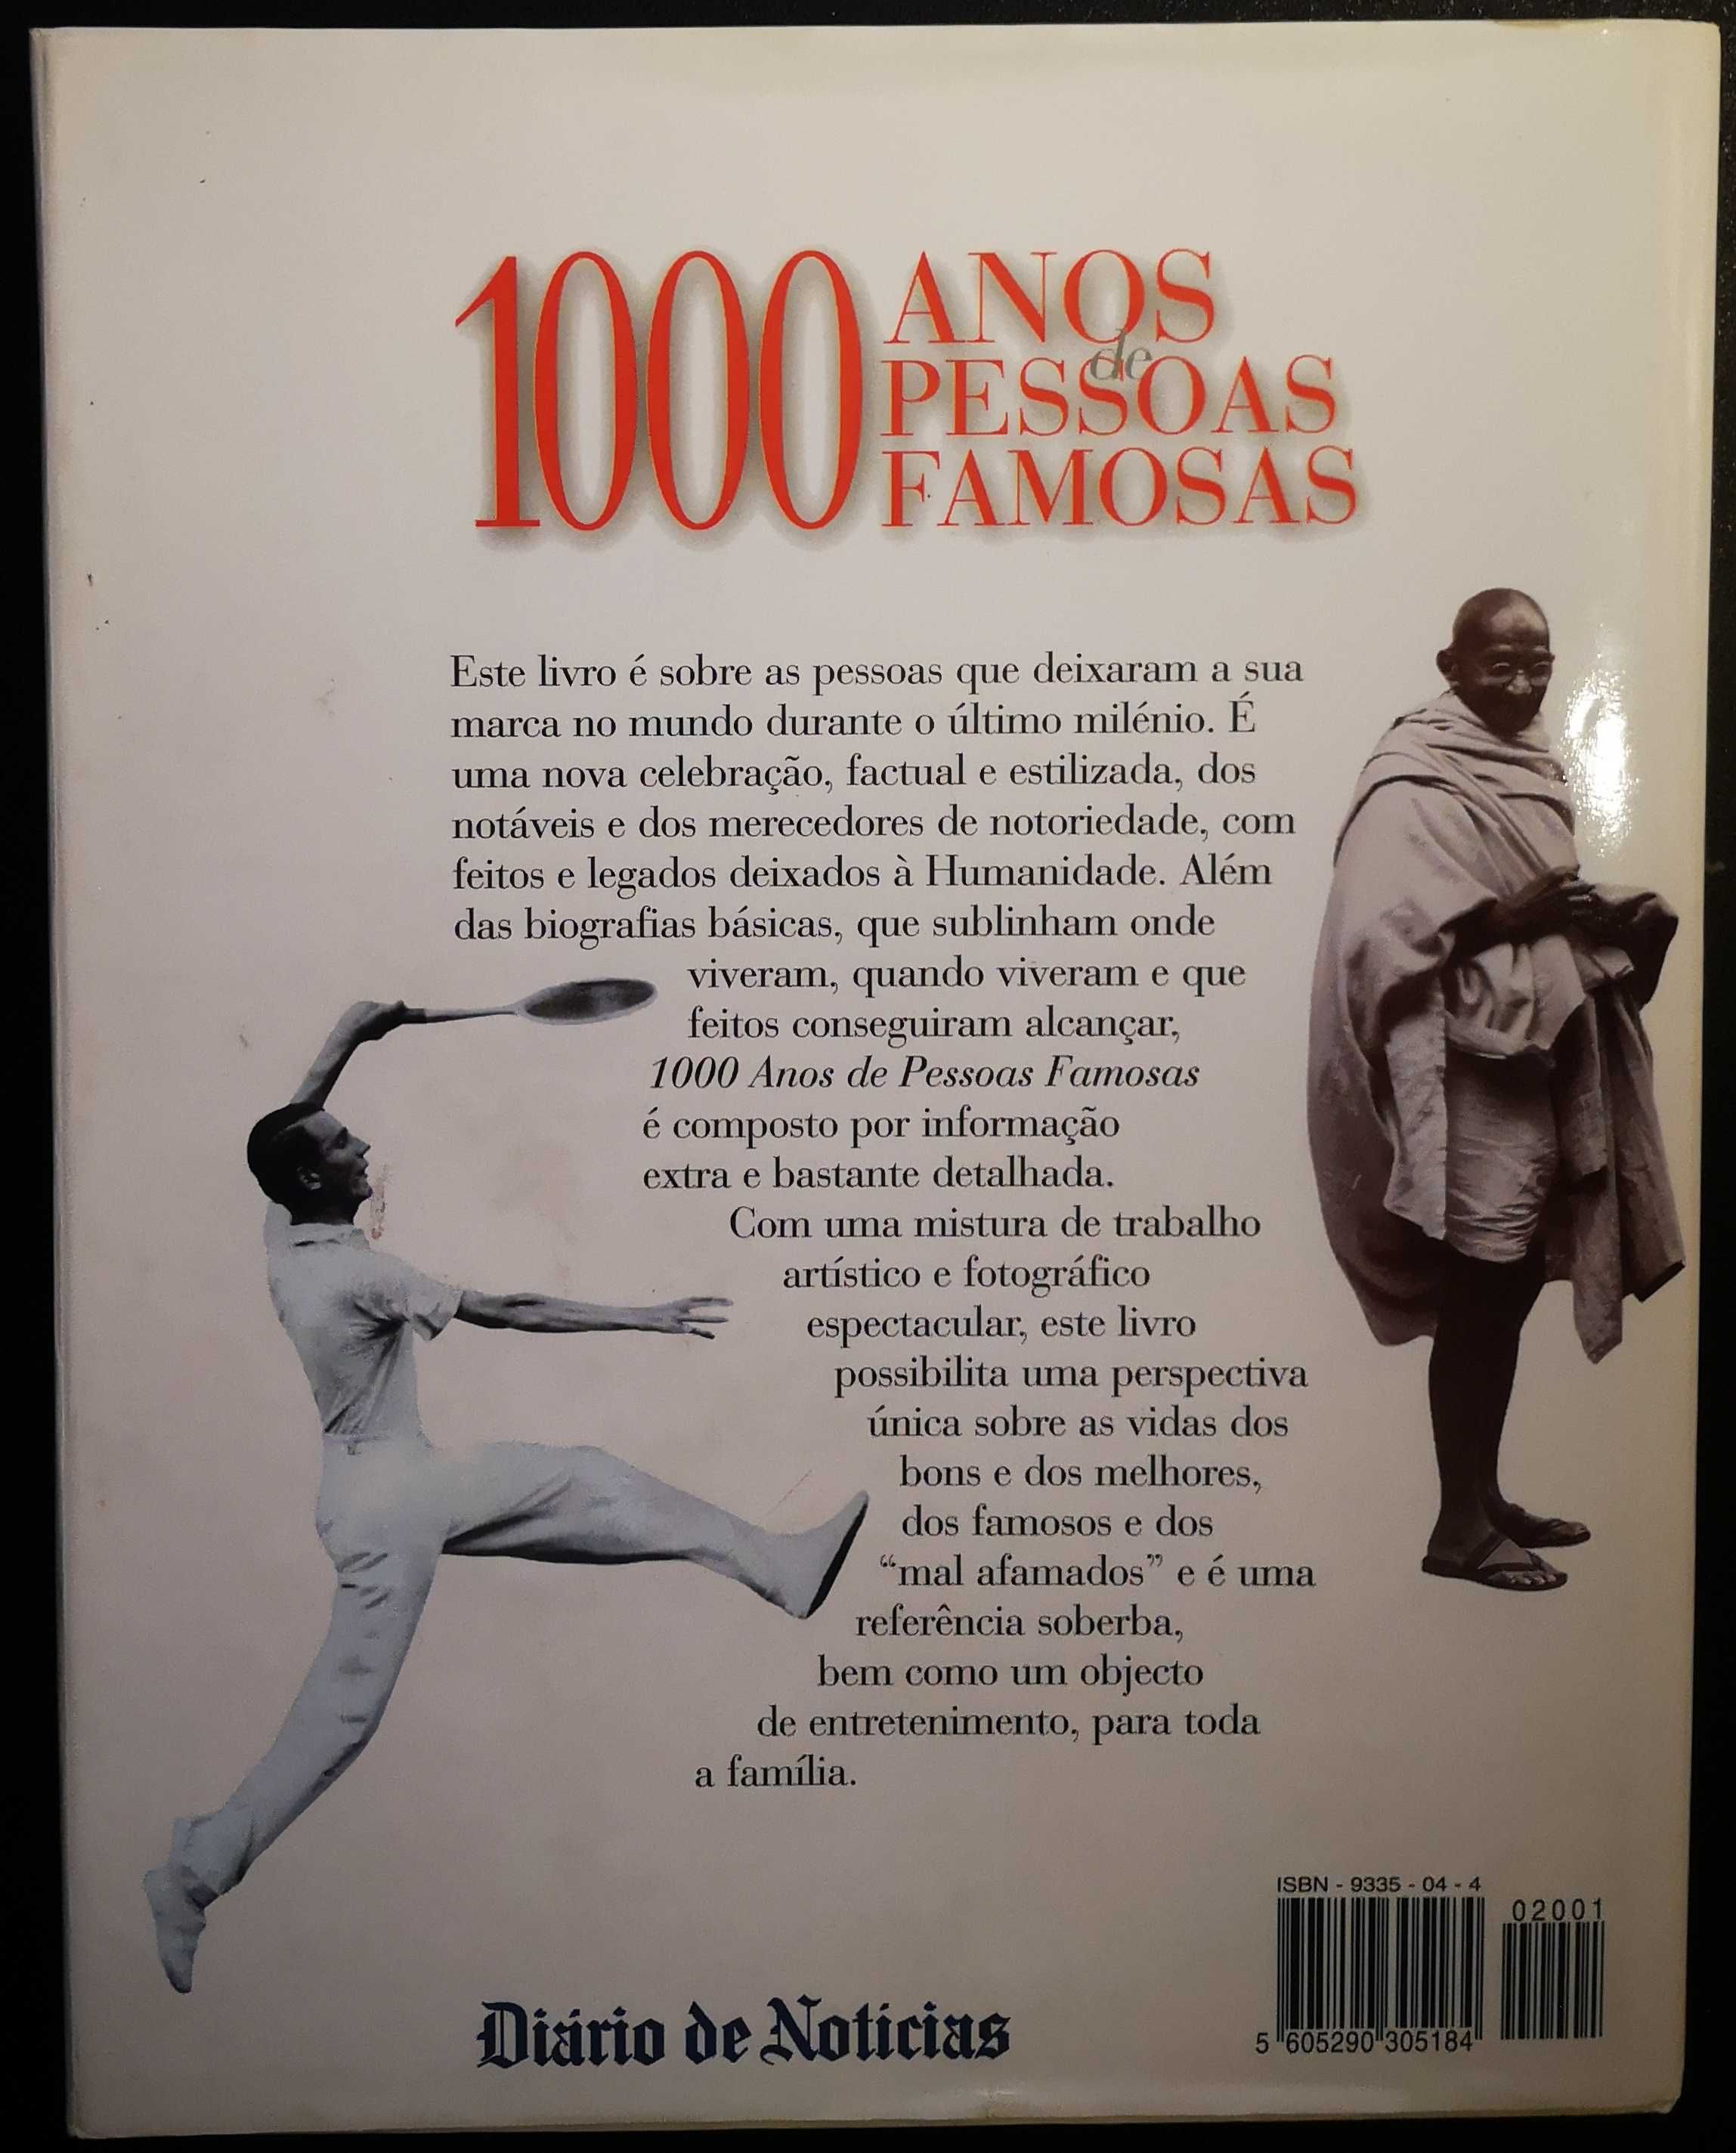 "1000 Anos de Pessoas Famosas" - Diário de Notícias